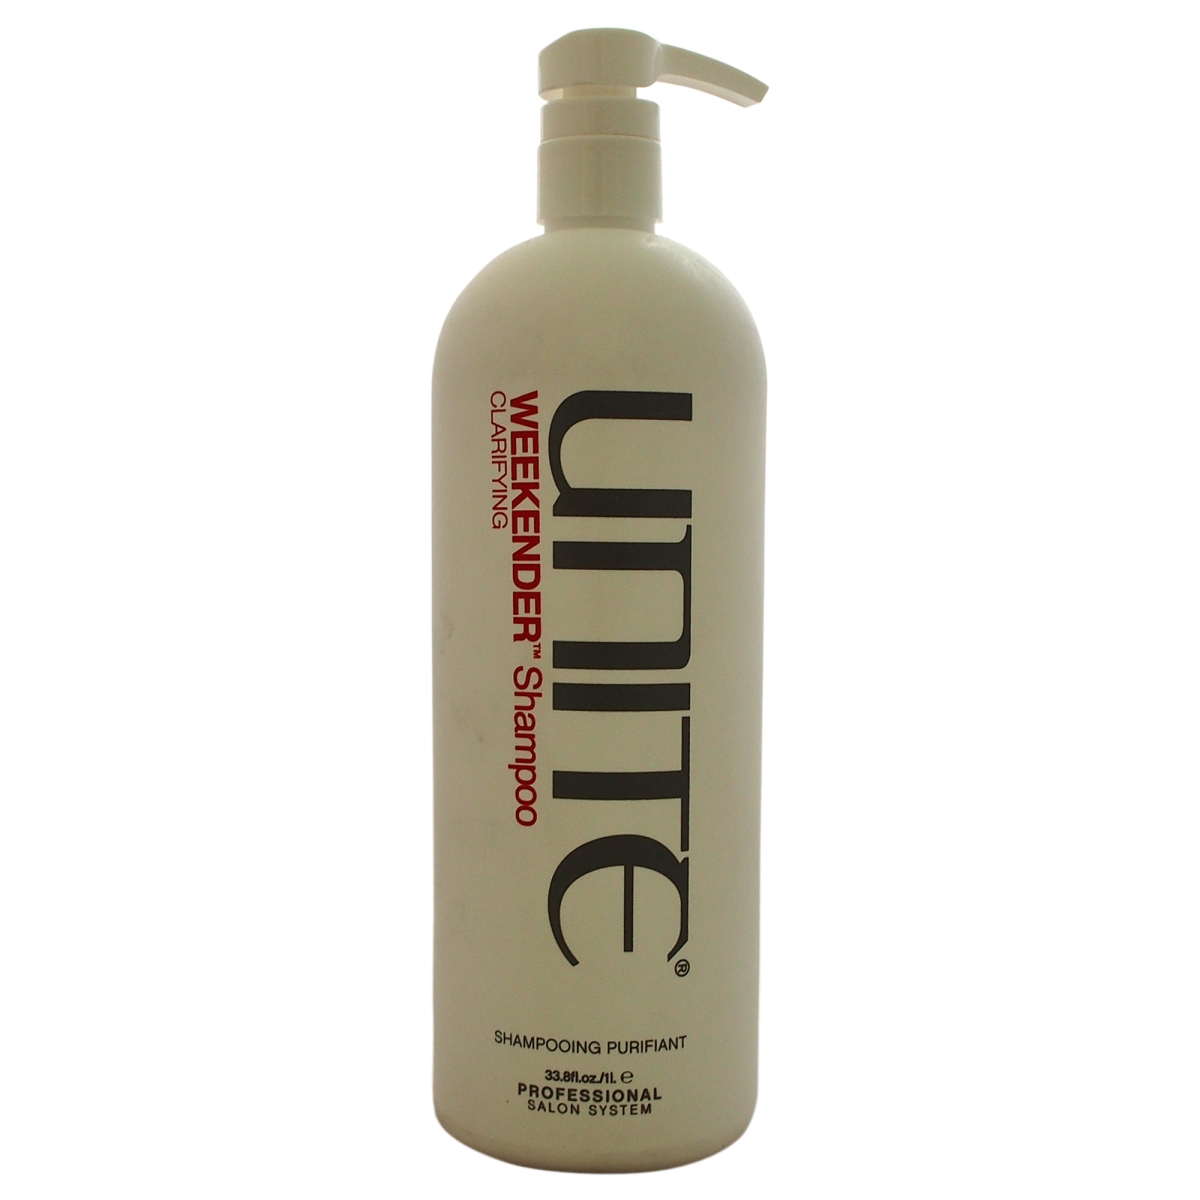 U-hc-9690 Weekender Shampoo Clarifying For Unisex - 33.8 Oz